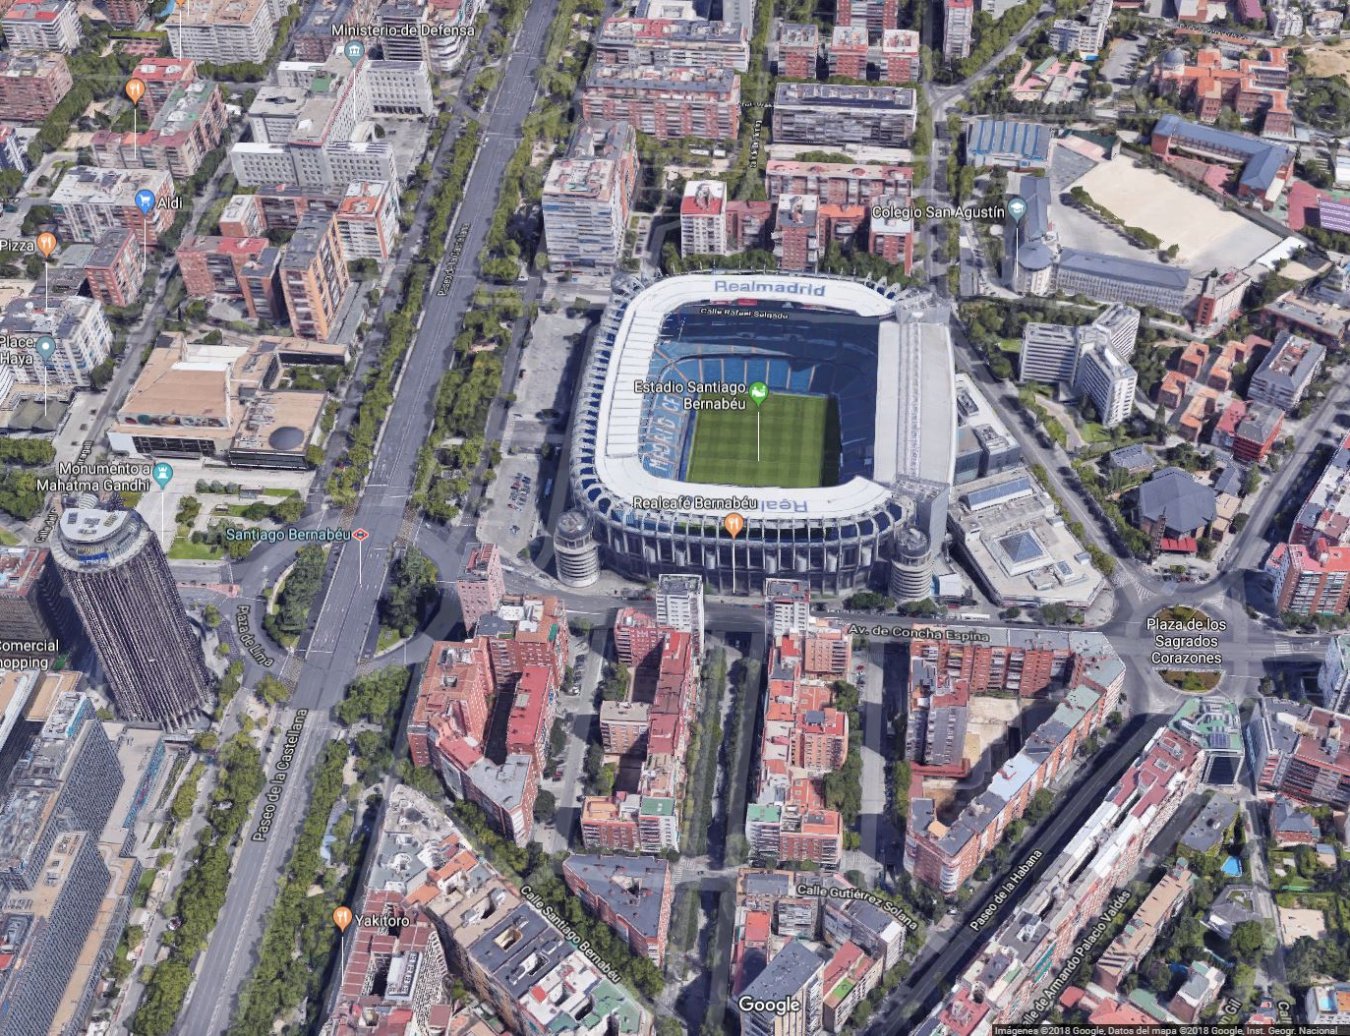 Vista aérea actual de la zona del estadio Santiago Bernabéu.